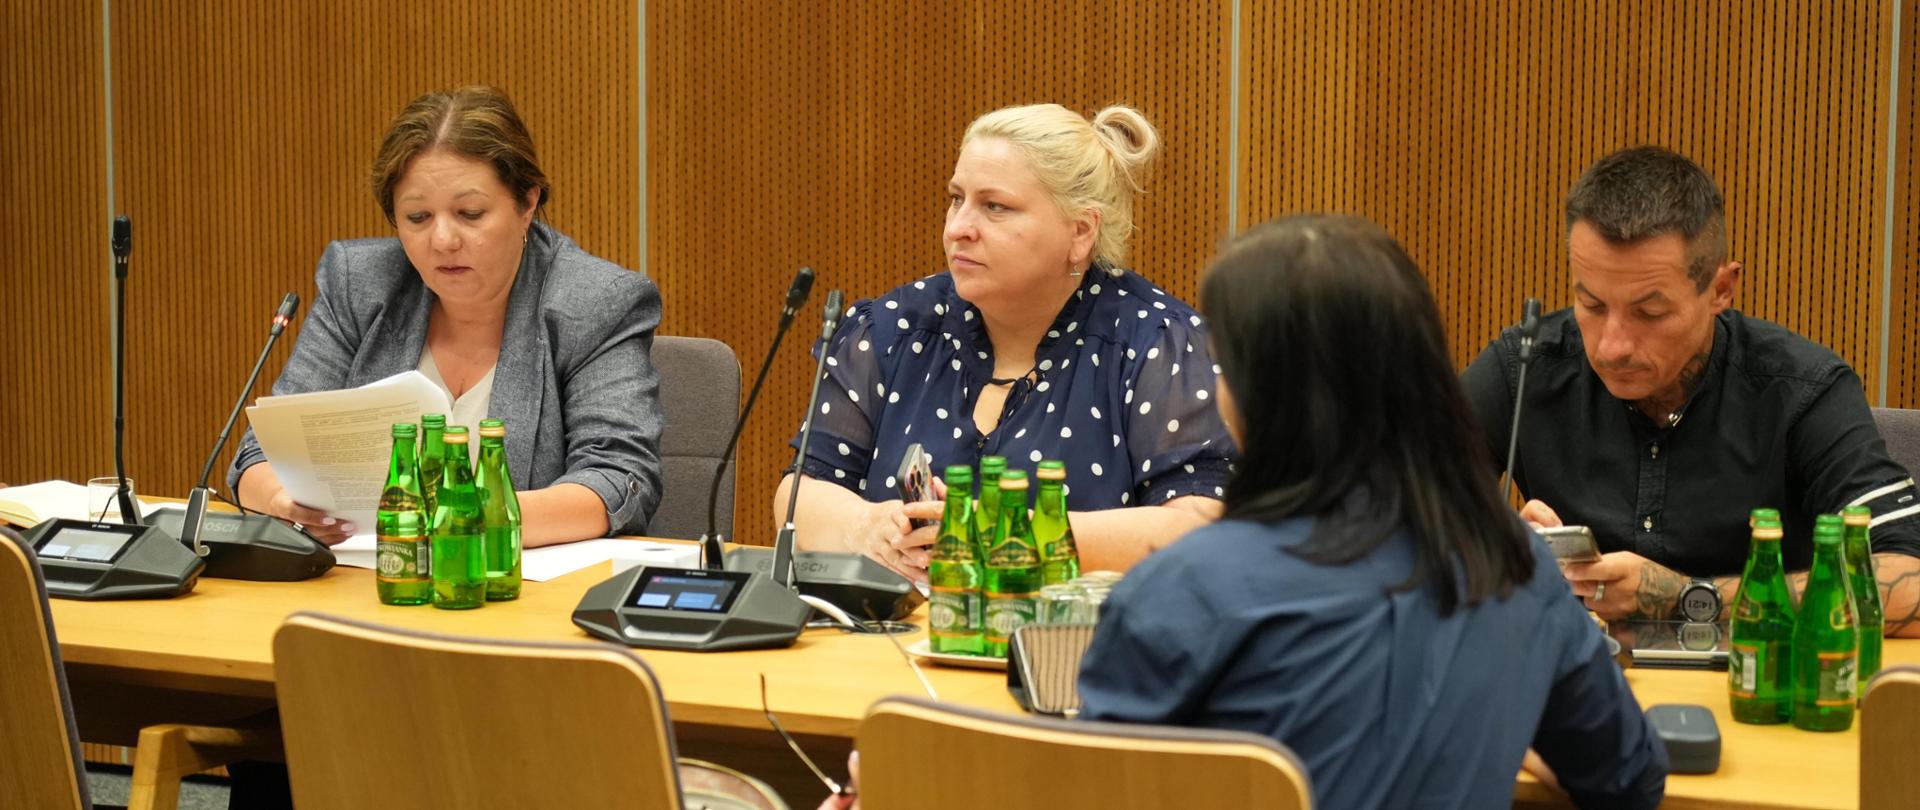 W Sejmie RP odbyło się posiedzenie sejmowej podkomisji stałej ds. współpracy z organizacjami pozarządowymi, samorządowymi i związkami zawodowymi. W posiedzeniu, które odbyło się 11 lipca br. udział wzięła wiceminister Izabela Ziętka.
